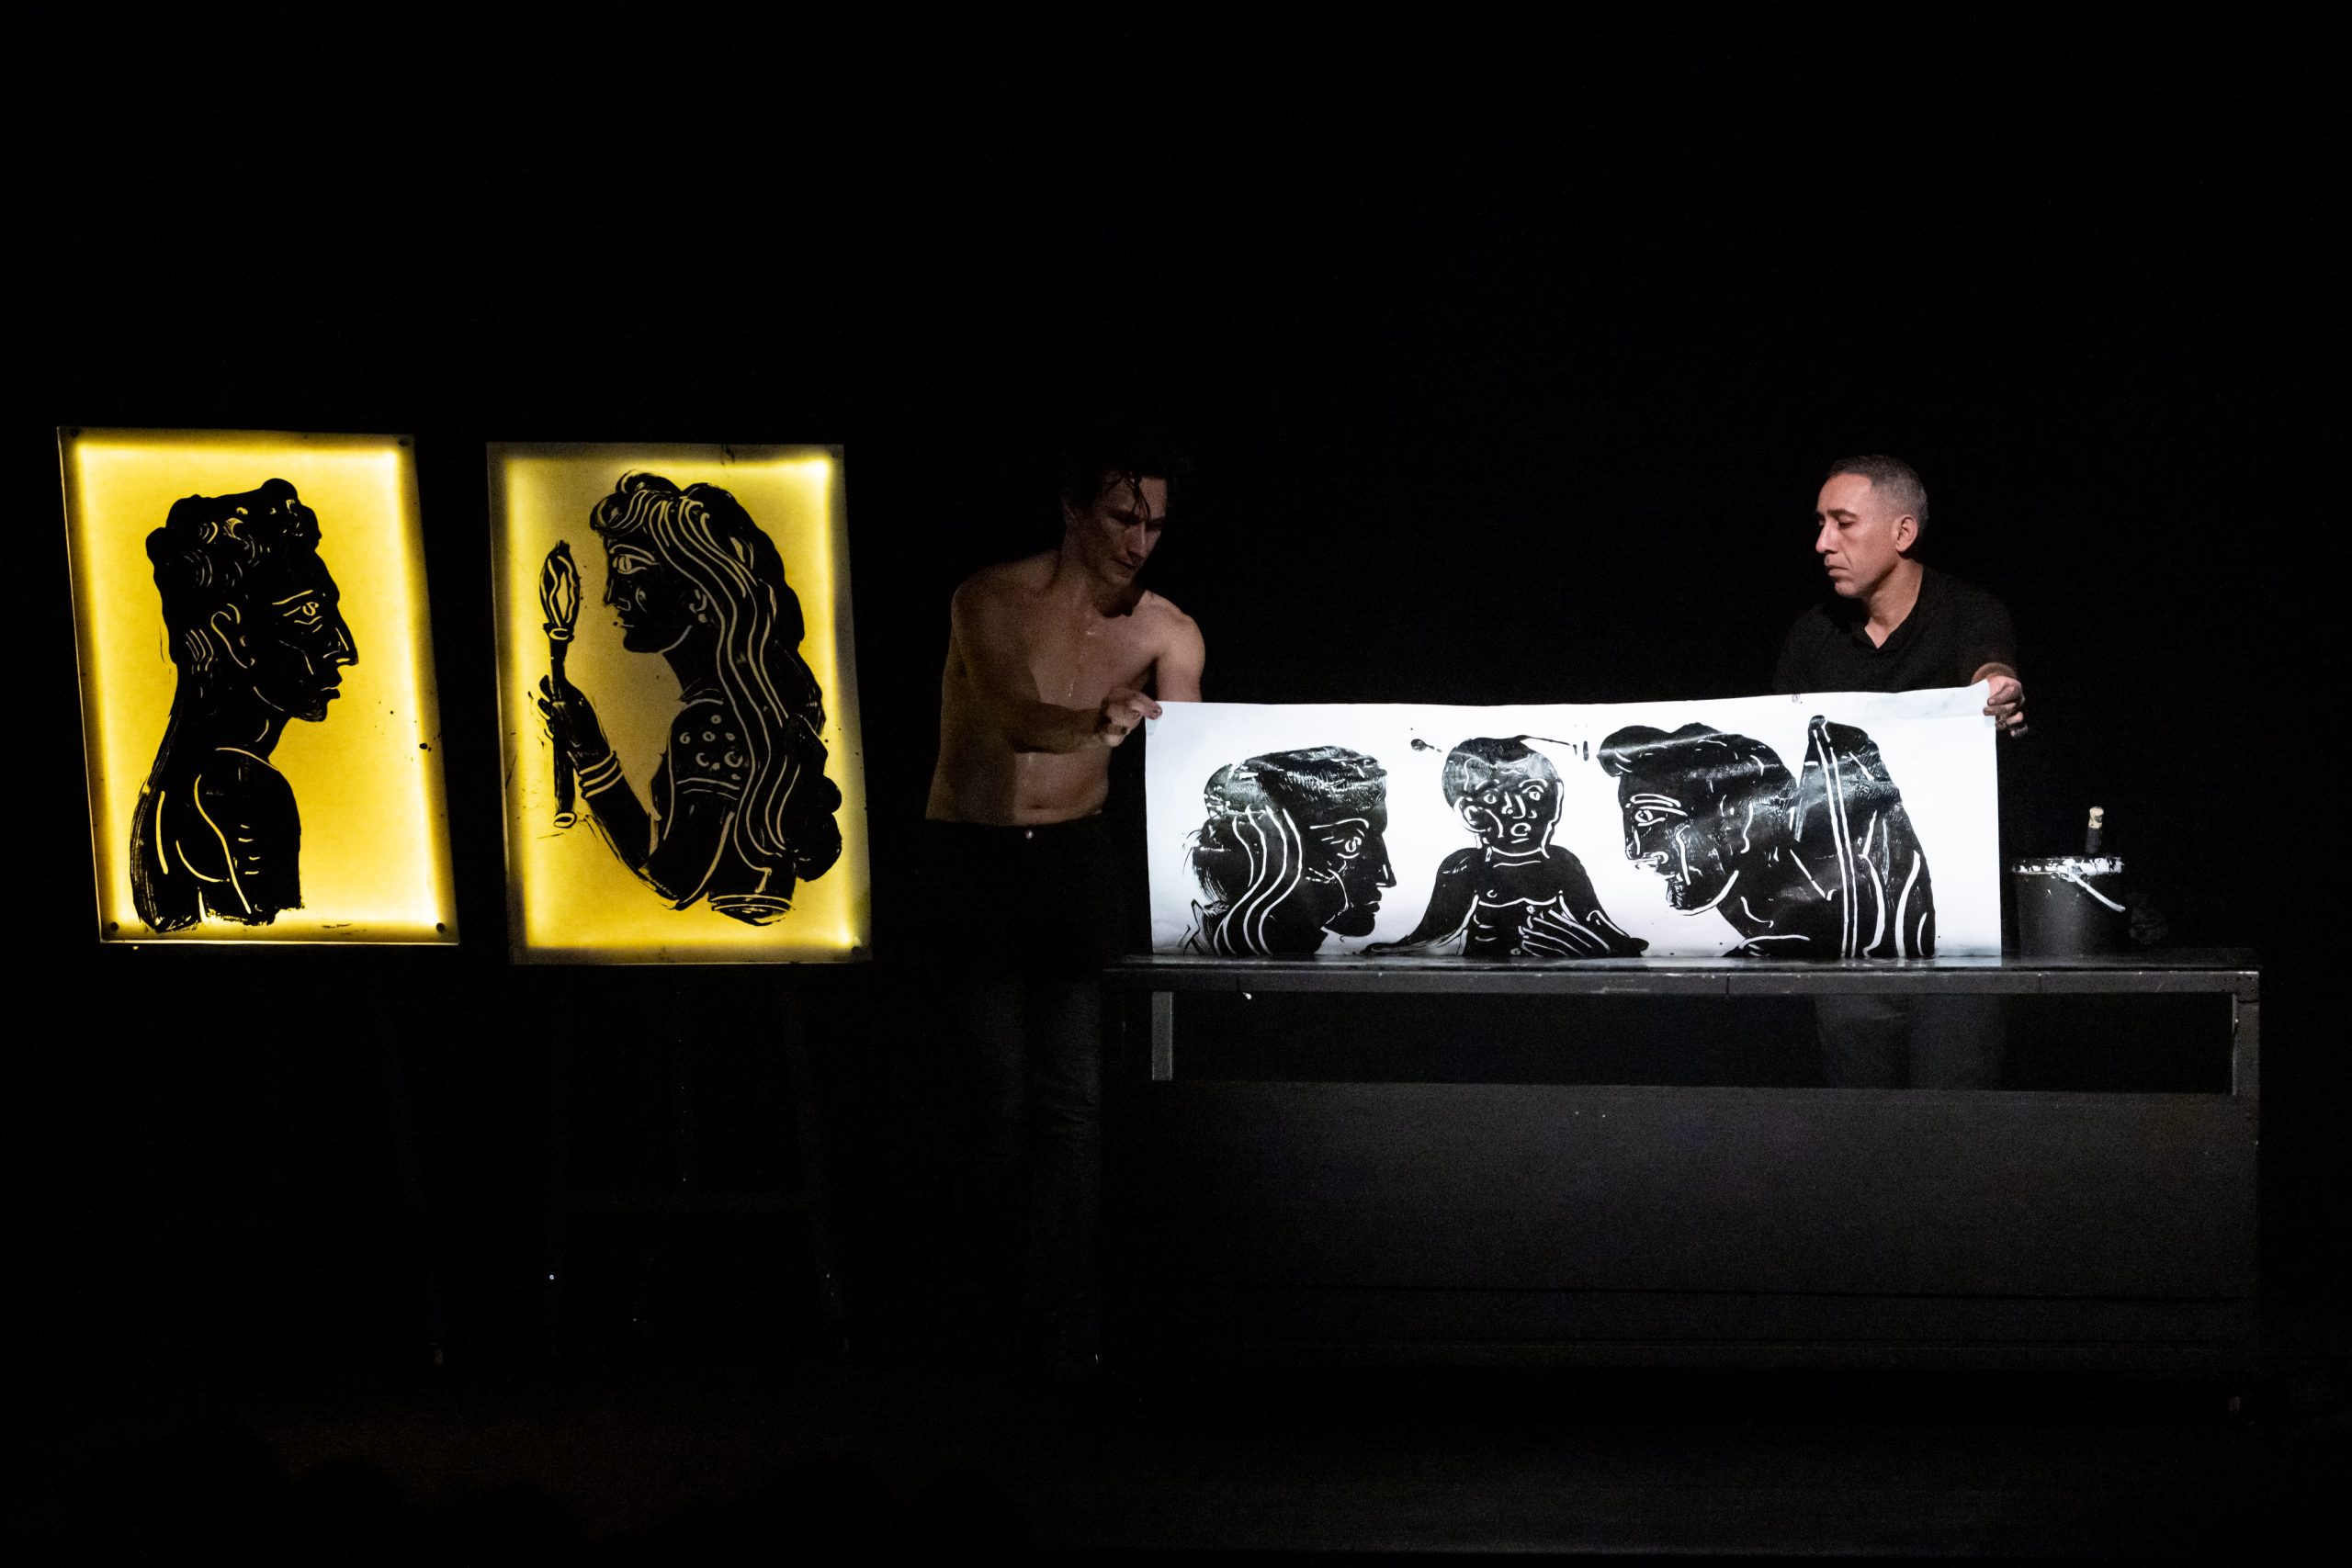 Αίας: Τα έργα του Απόστολου Χαντζαρά από την παράσταση του Γιώργου Νανούρη σε μια έκθεση στη Sianti Gallery